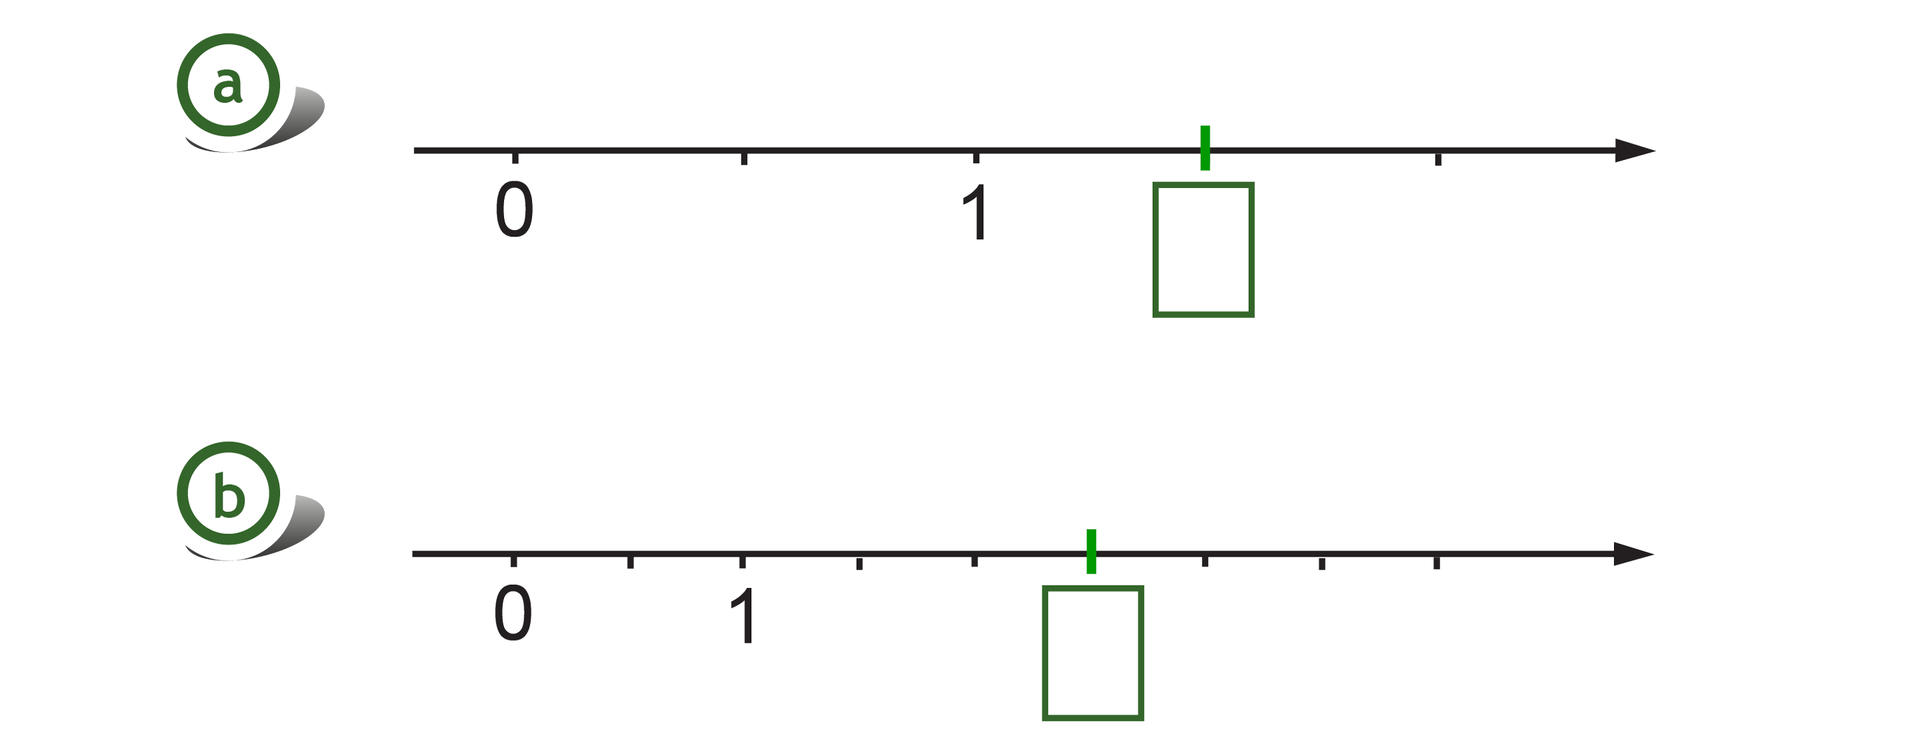 Rysunek dwóch osi liczbowych z zaznaczonymi punktami 0 i 1. Na pierwszej osi odcinek jednostkowy podzielony na dwie równe części, szukany punkt wyznacza jedną część za punktem 1. Na drugiej osi odcinek jednostkowy podzielony na 2 równe części, szukany punkt w wyznacza trzy części za punktem 1.